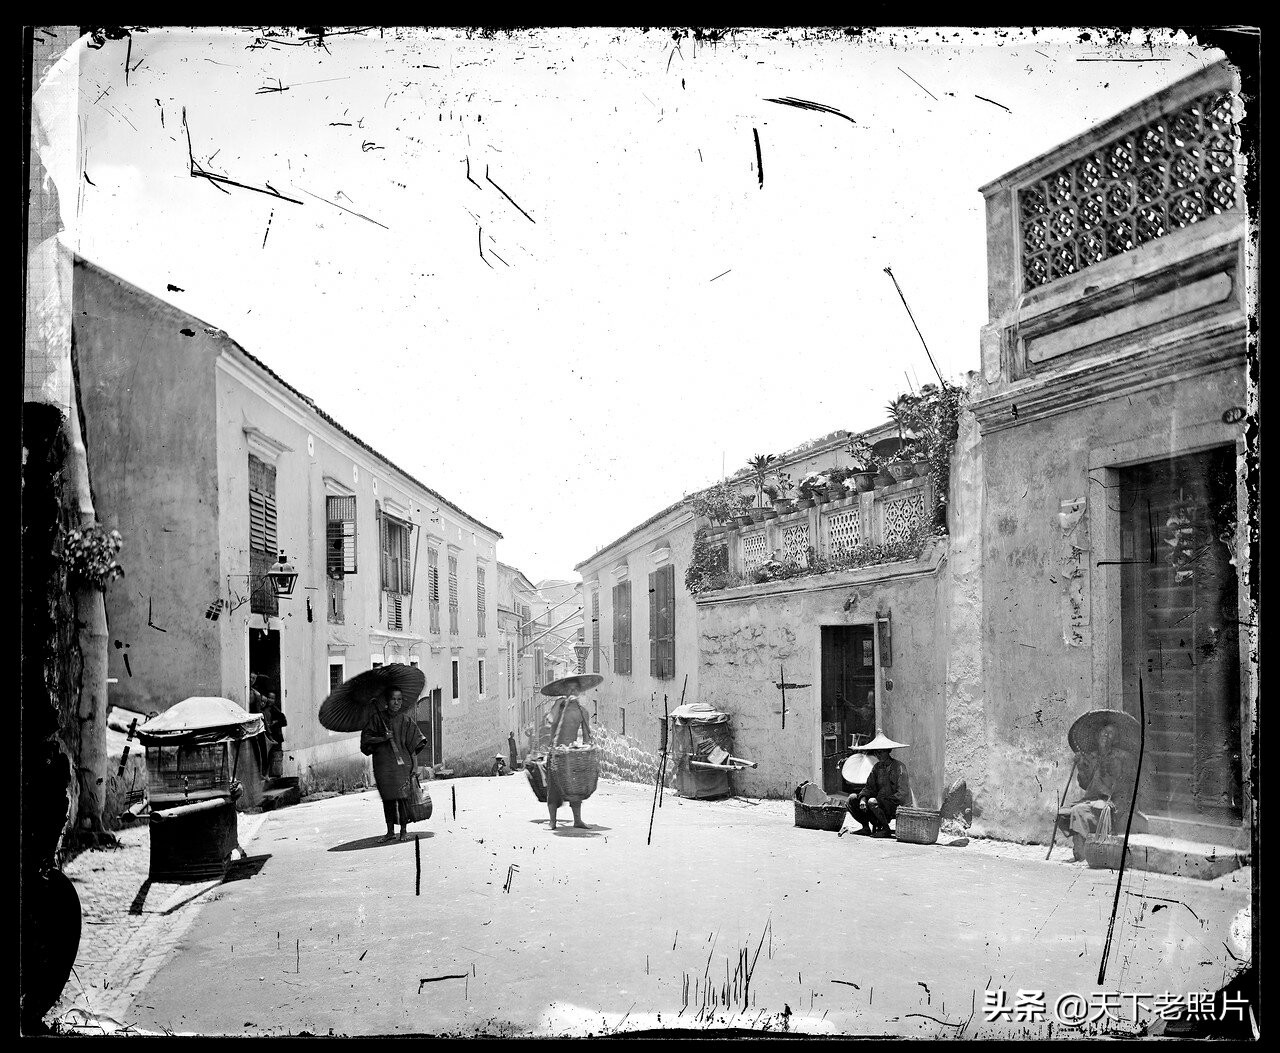 1868-1870年间 早期的广州香港澳门老照片